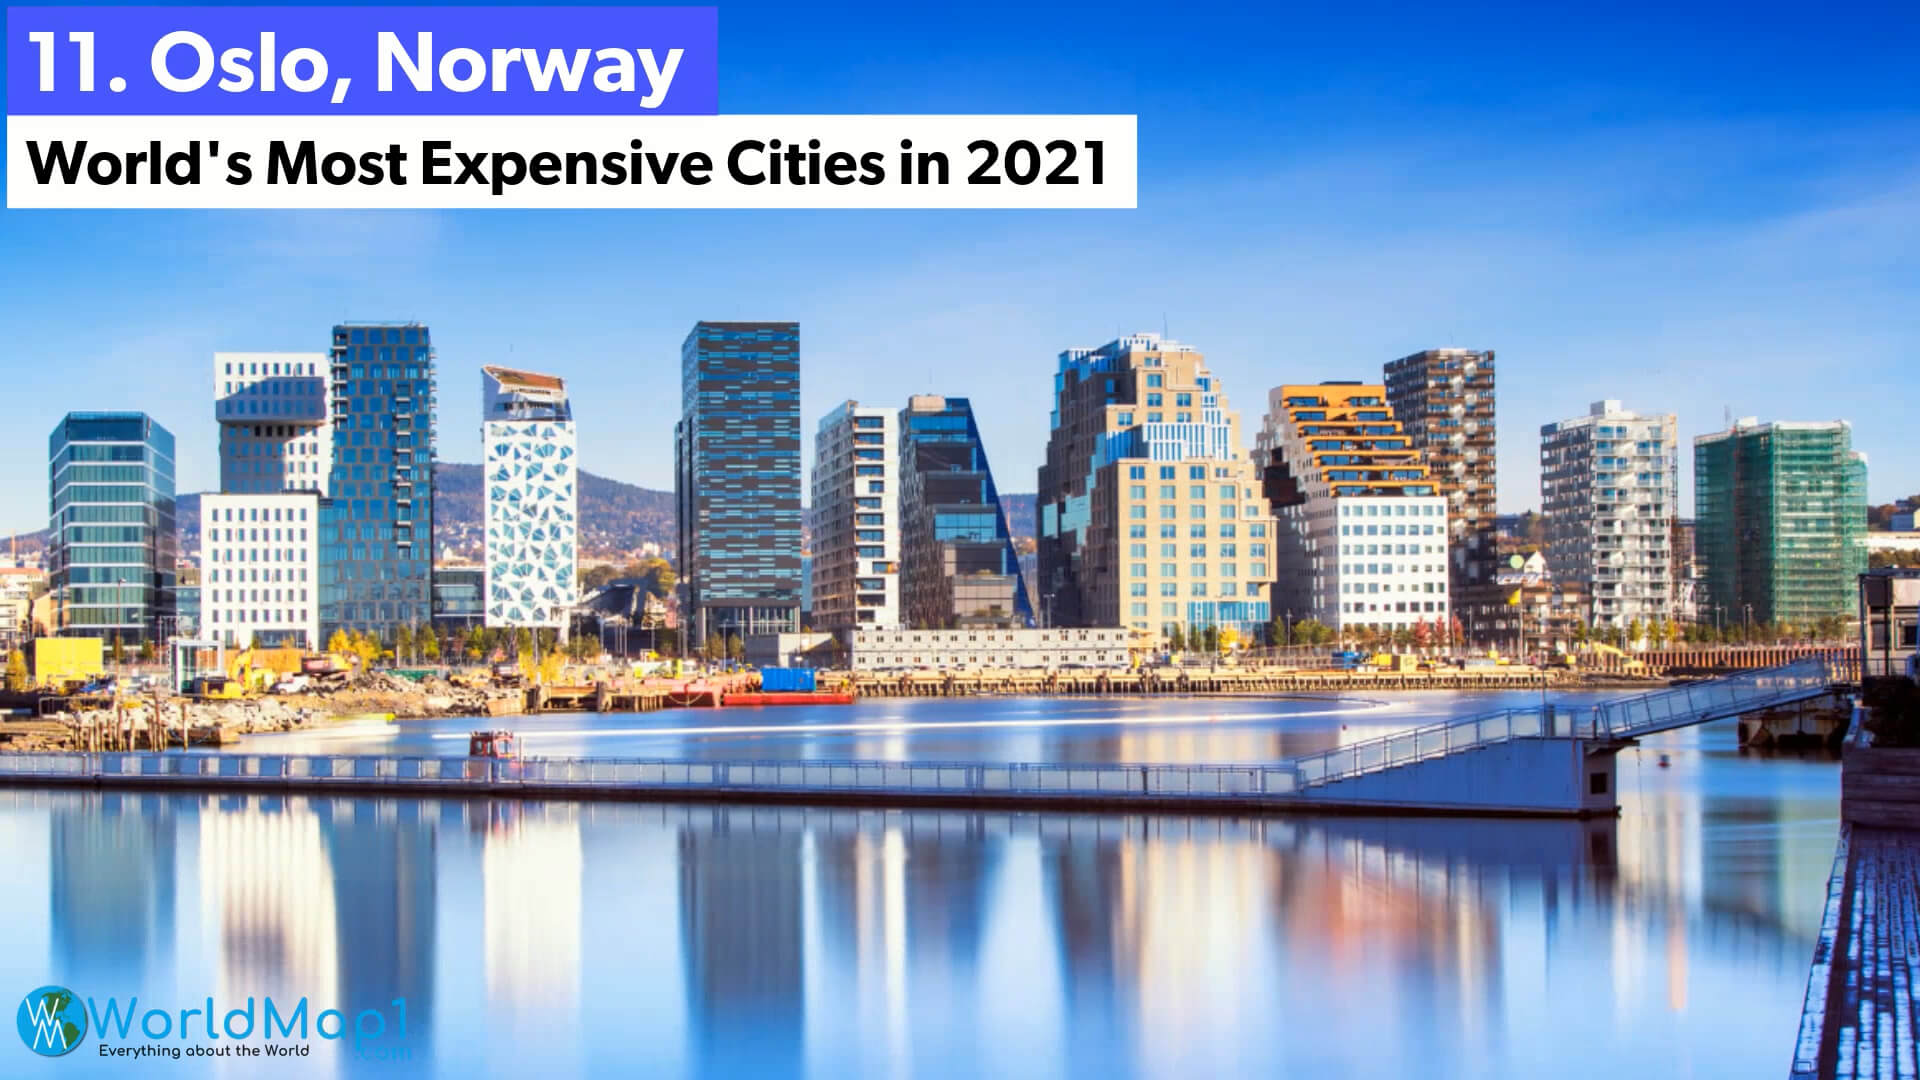 Les villes les plus chères du monde - Oslo, Norvège